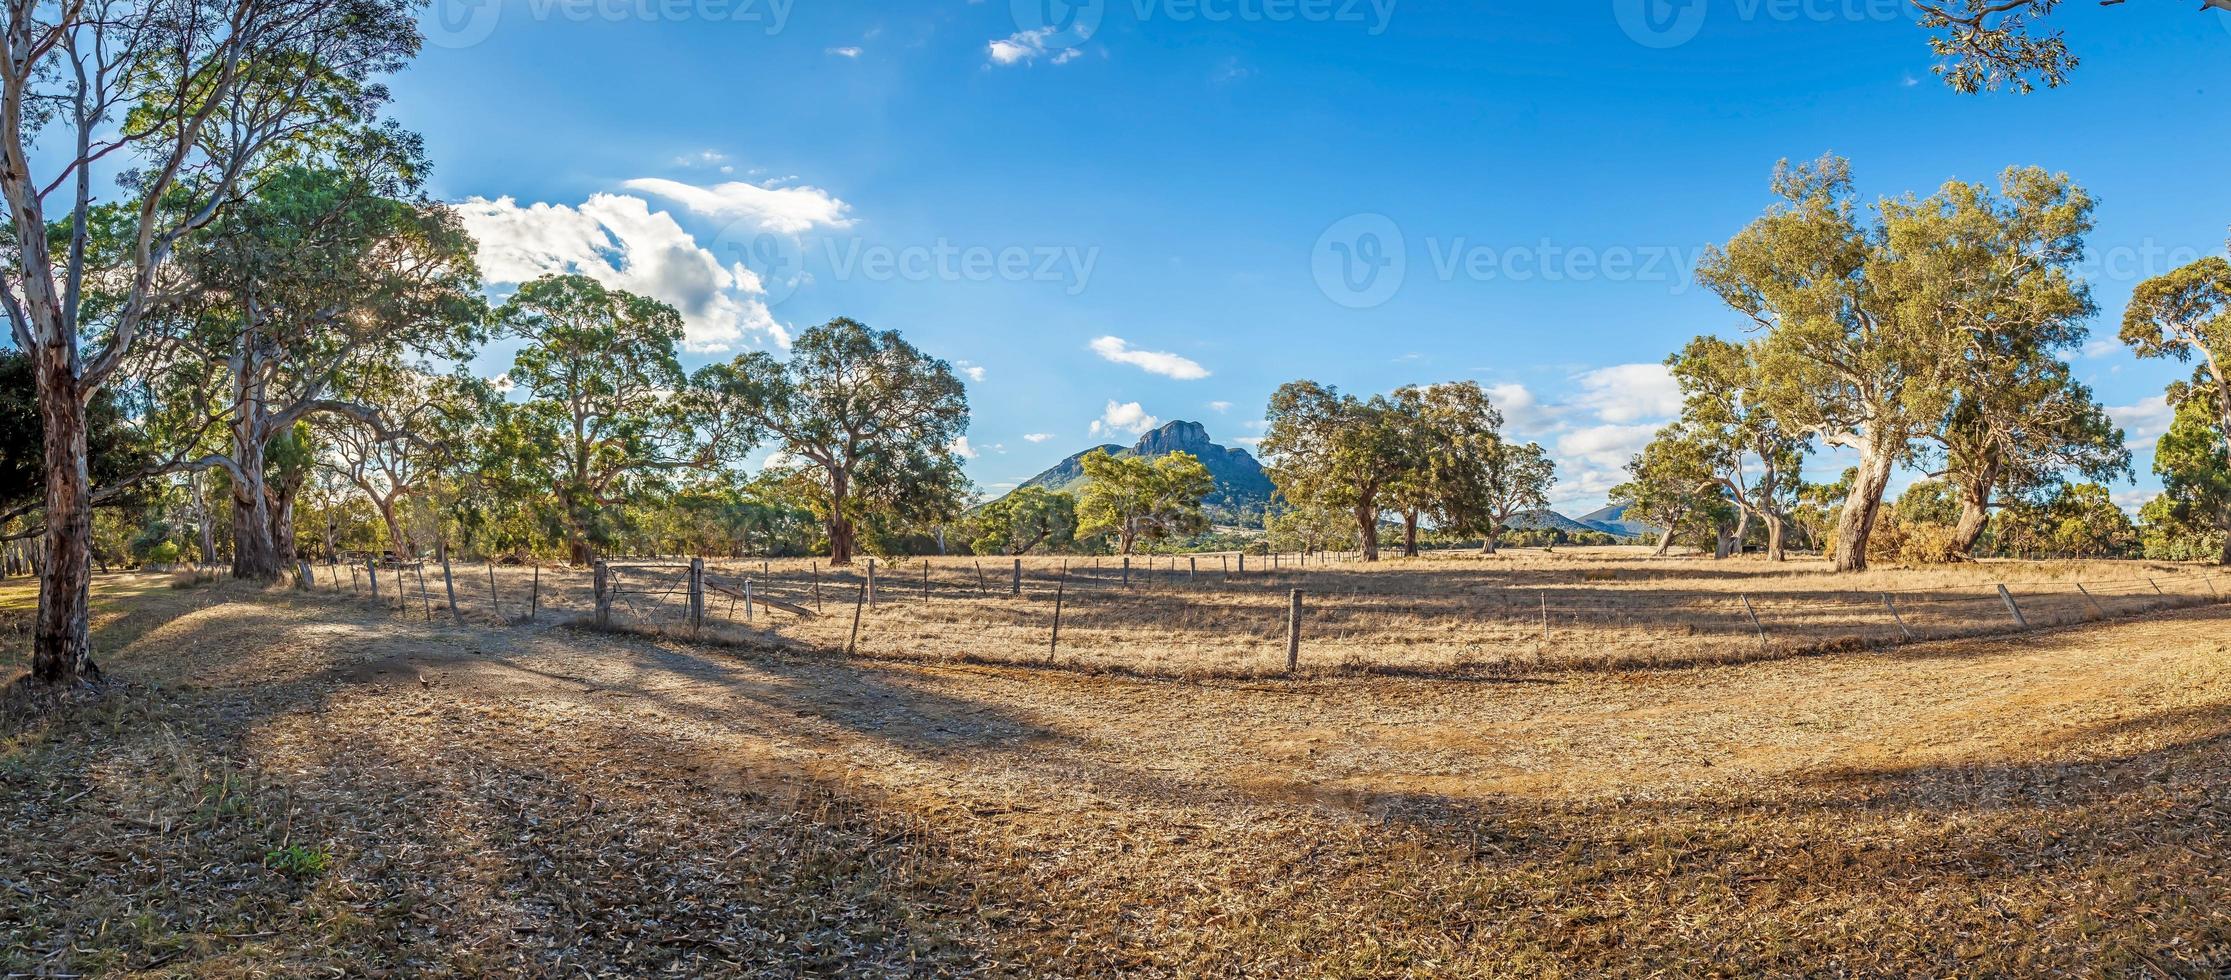 afbeelding over typisch landschap in Australië met eucalyptus bomen foto